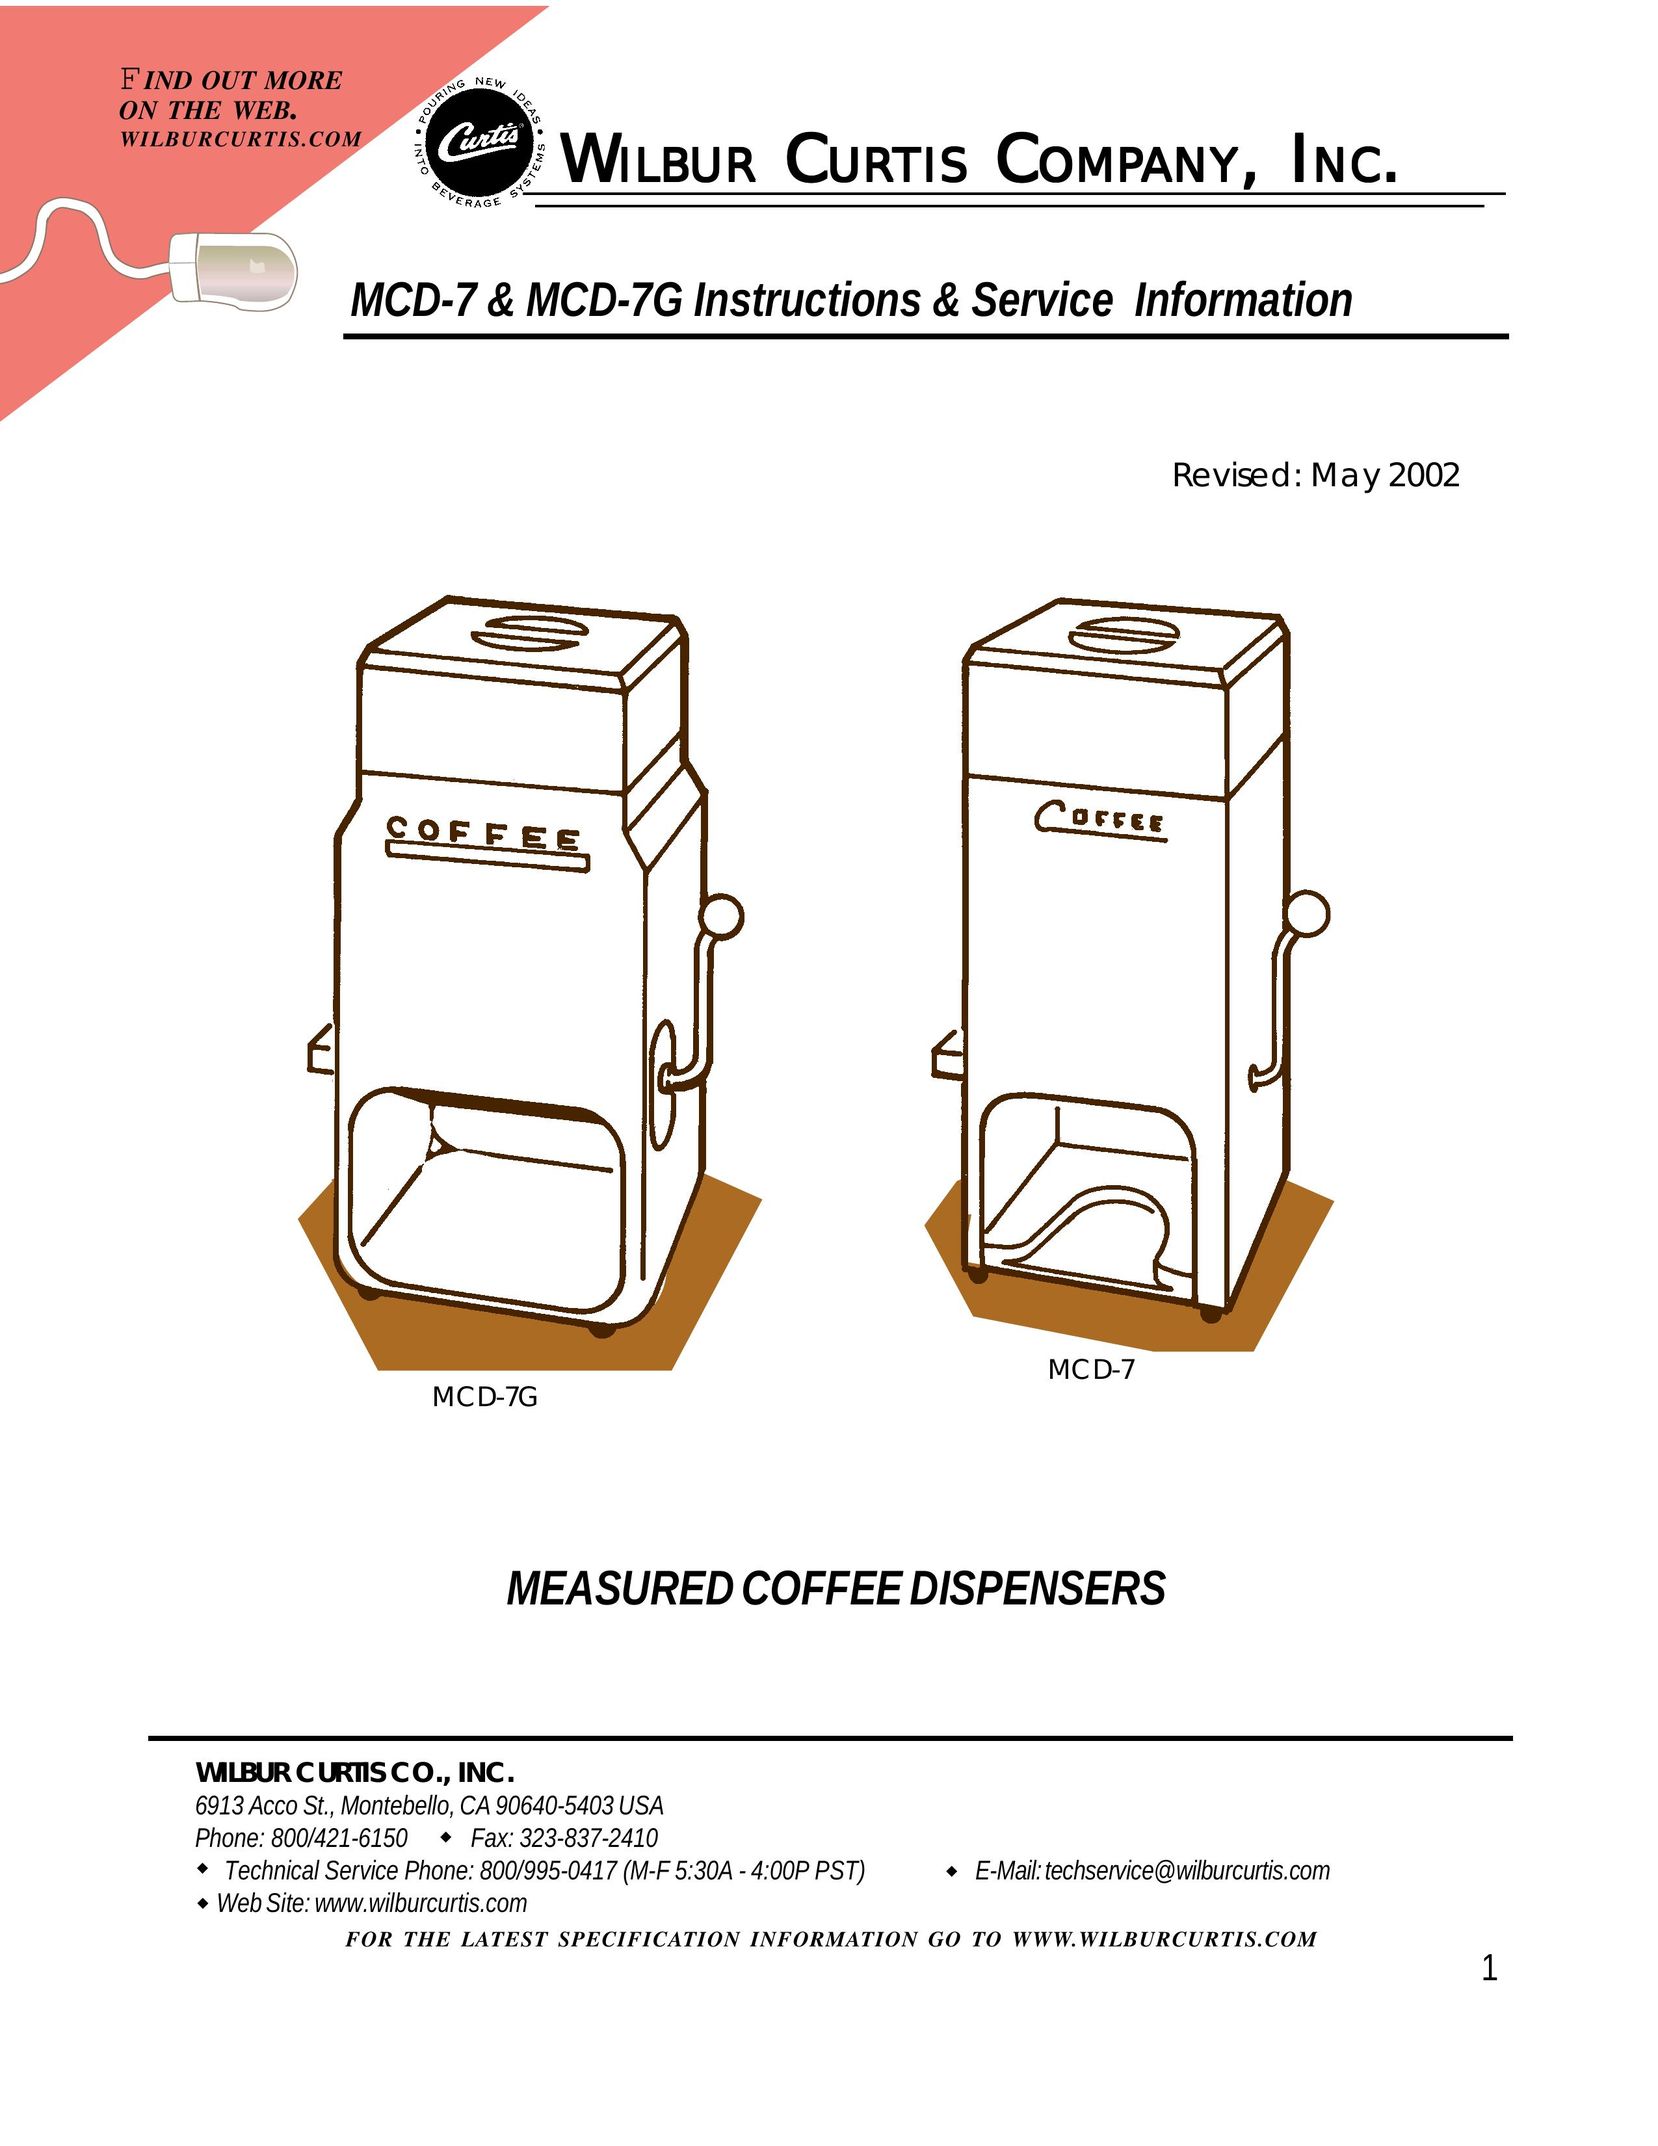 Wibur Curtis Company MCD-7 Beverage Dispenser User Manual